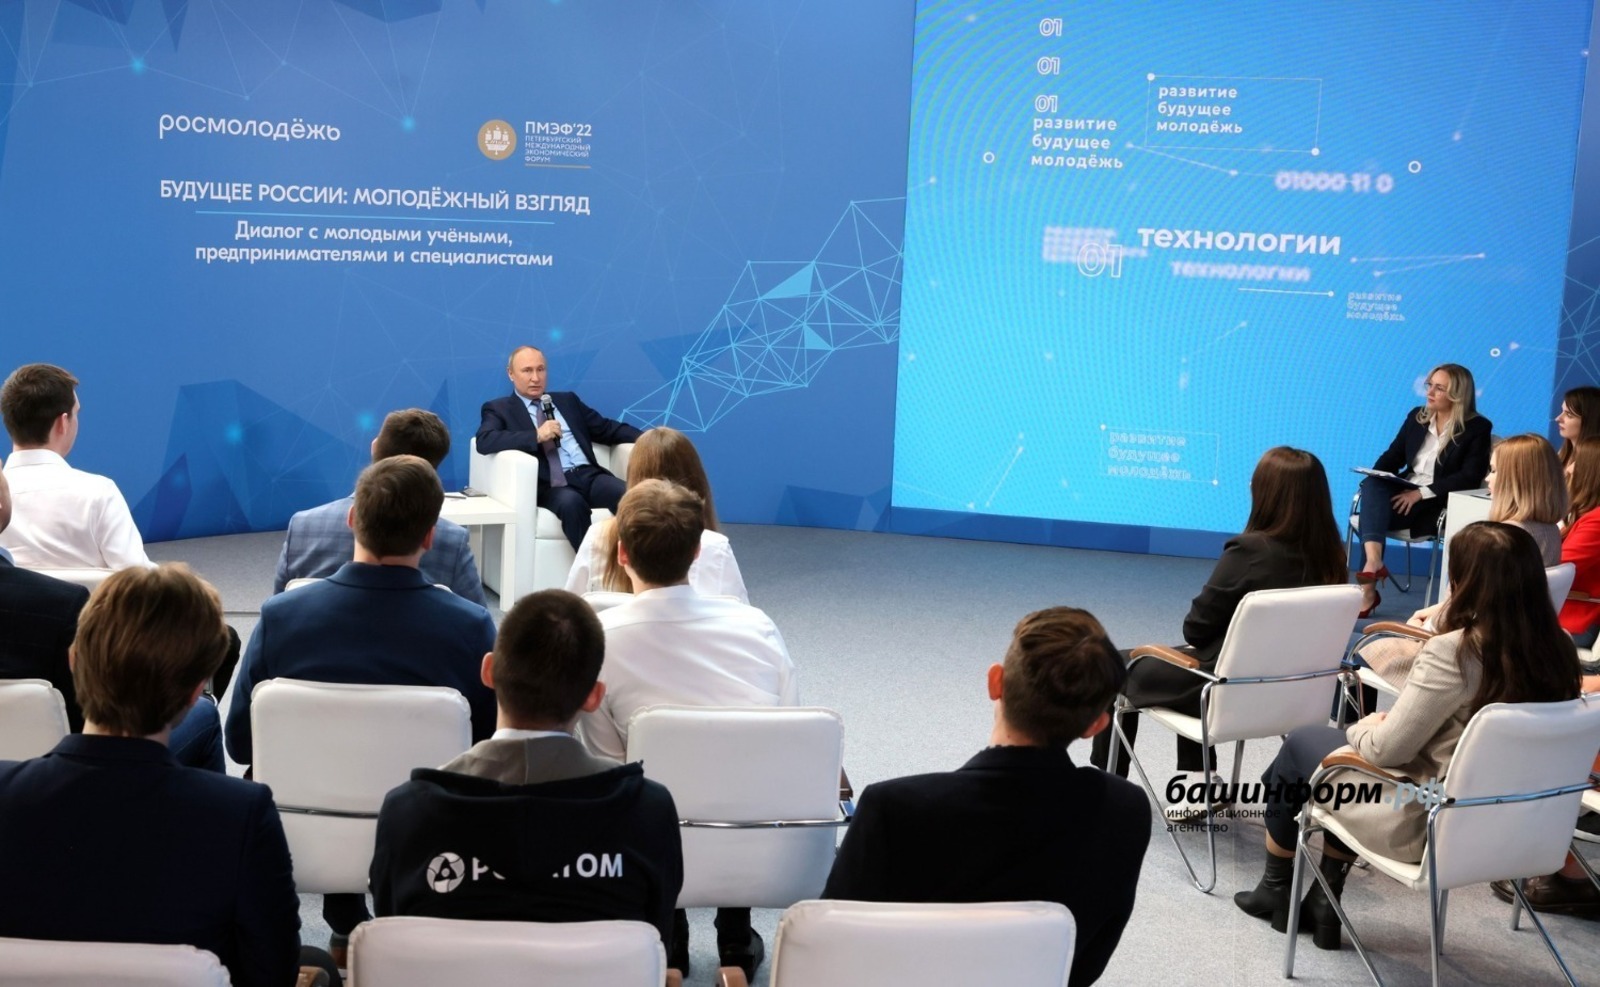 Возможности развития в Башкирии мебельного кластера высоко оценил Владимир Путин